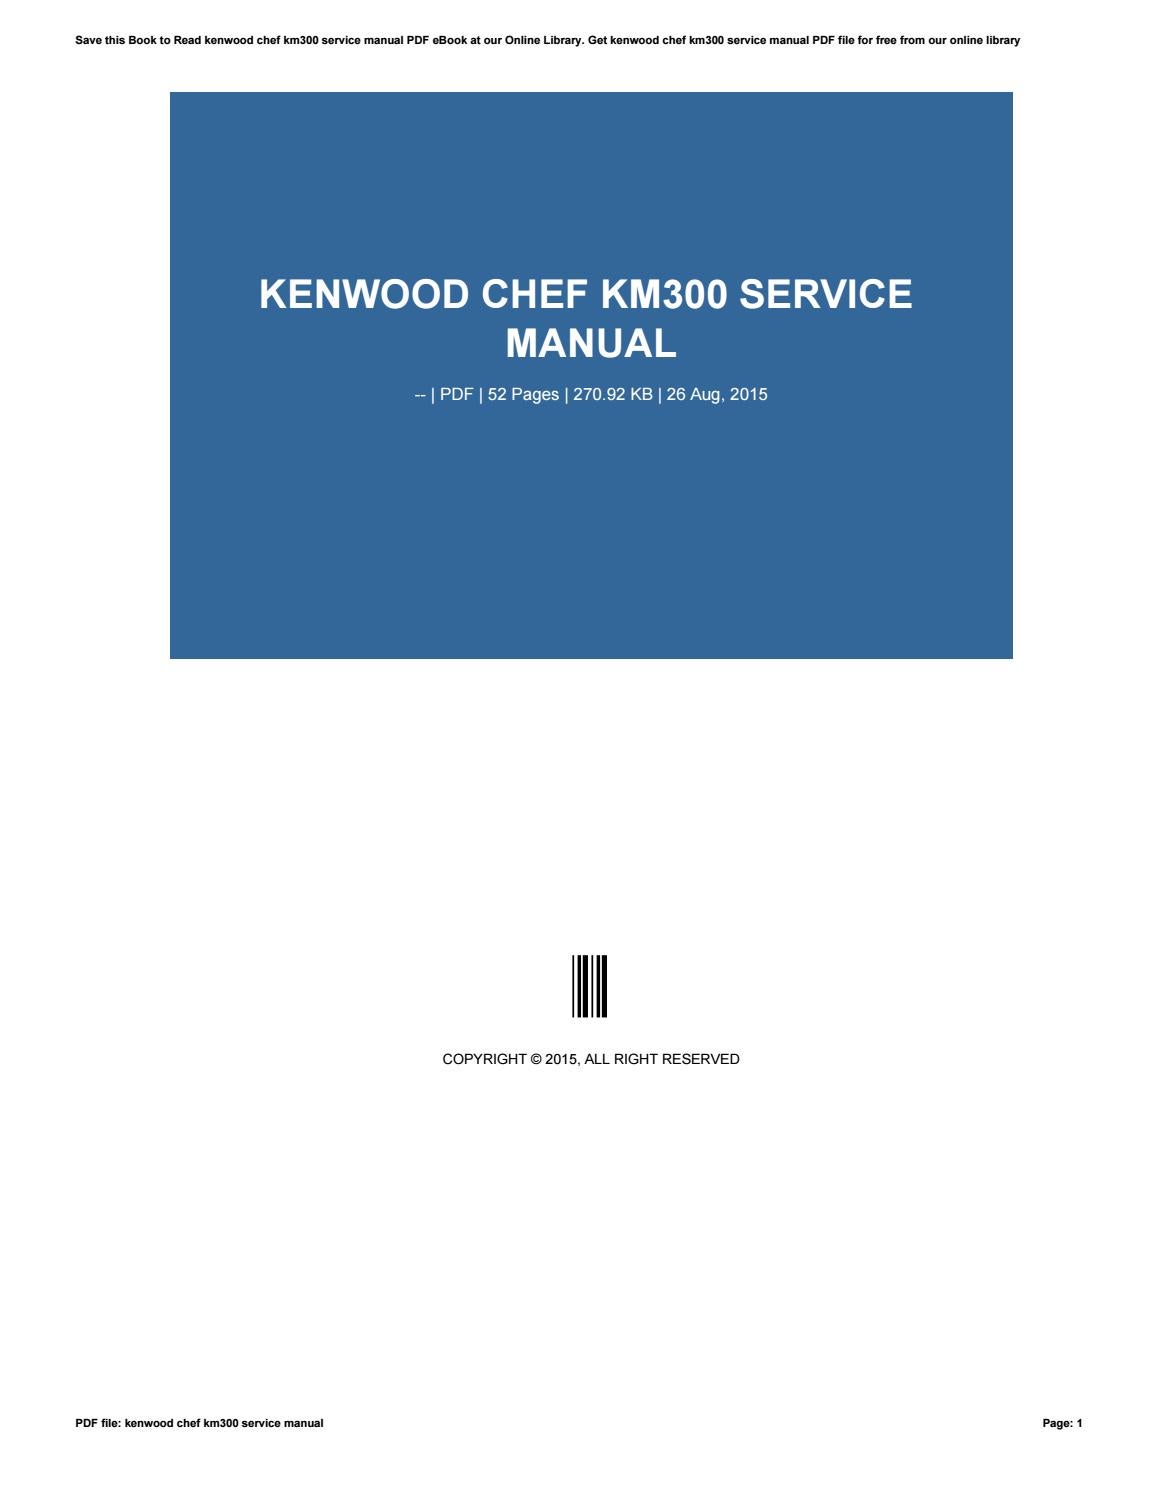 kenwood chef km300 instruction manual